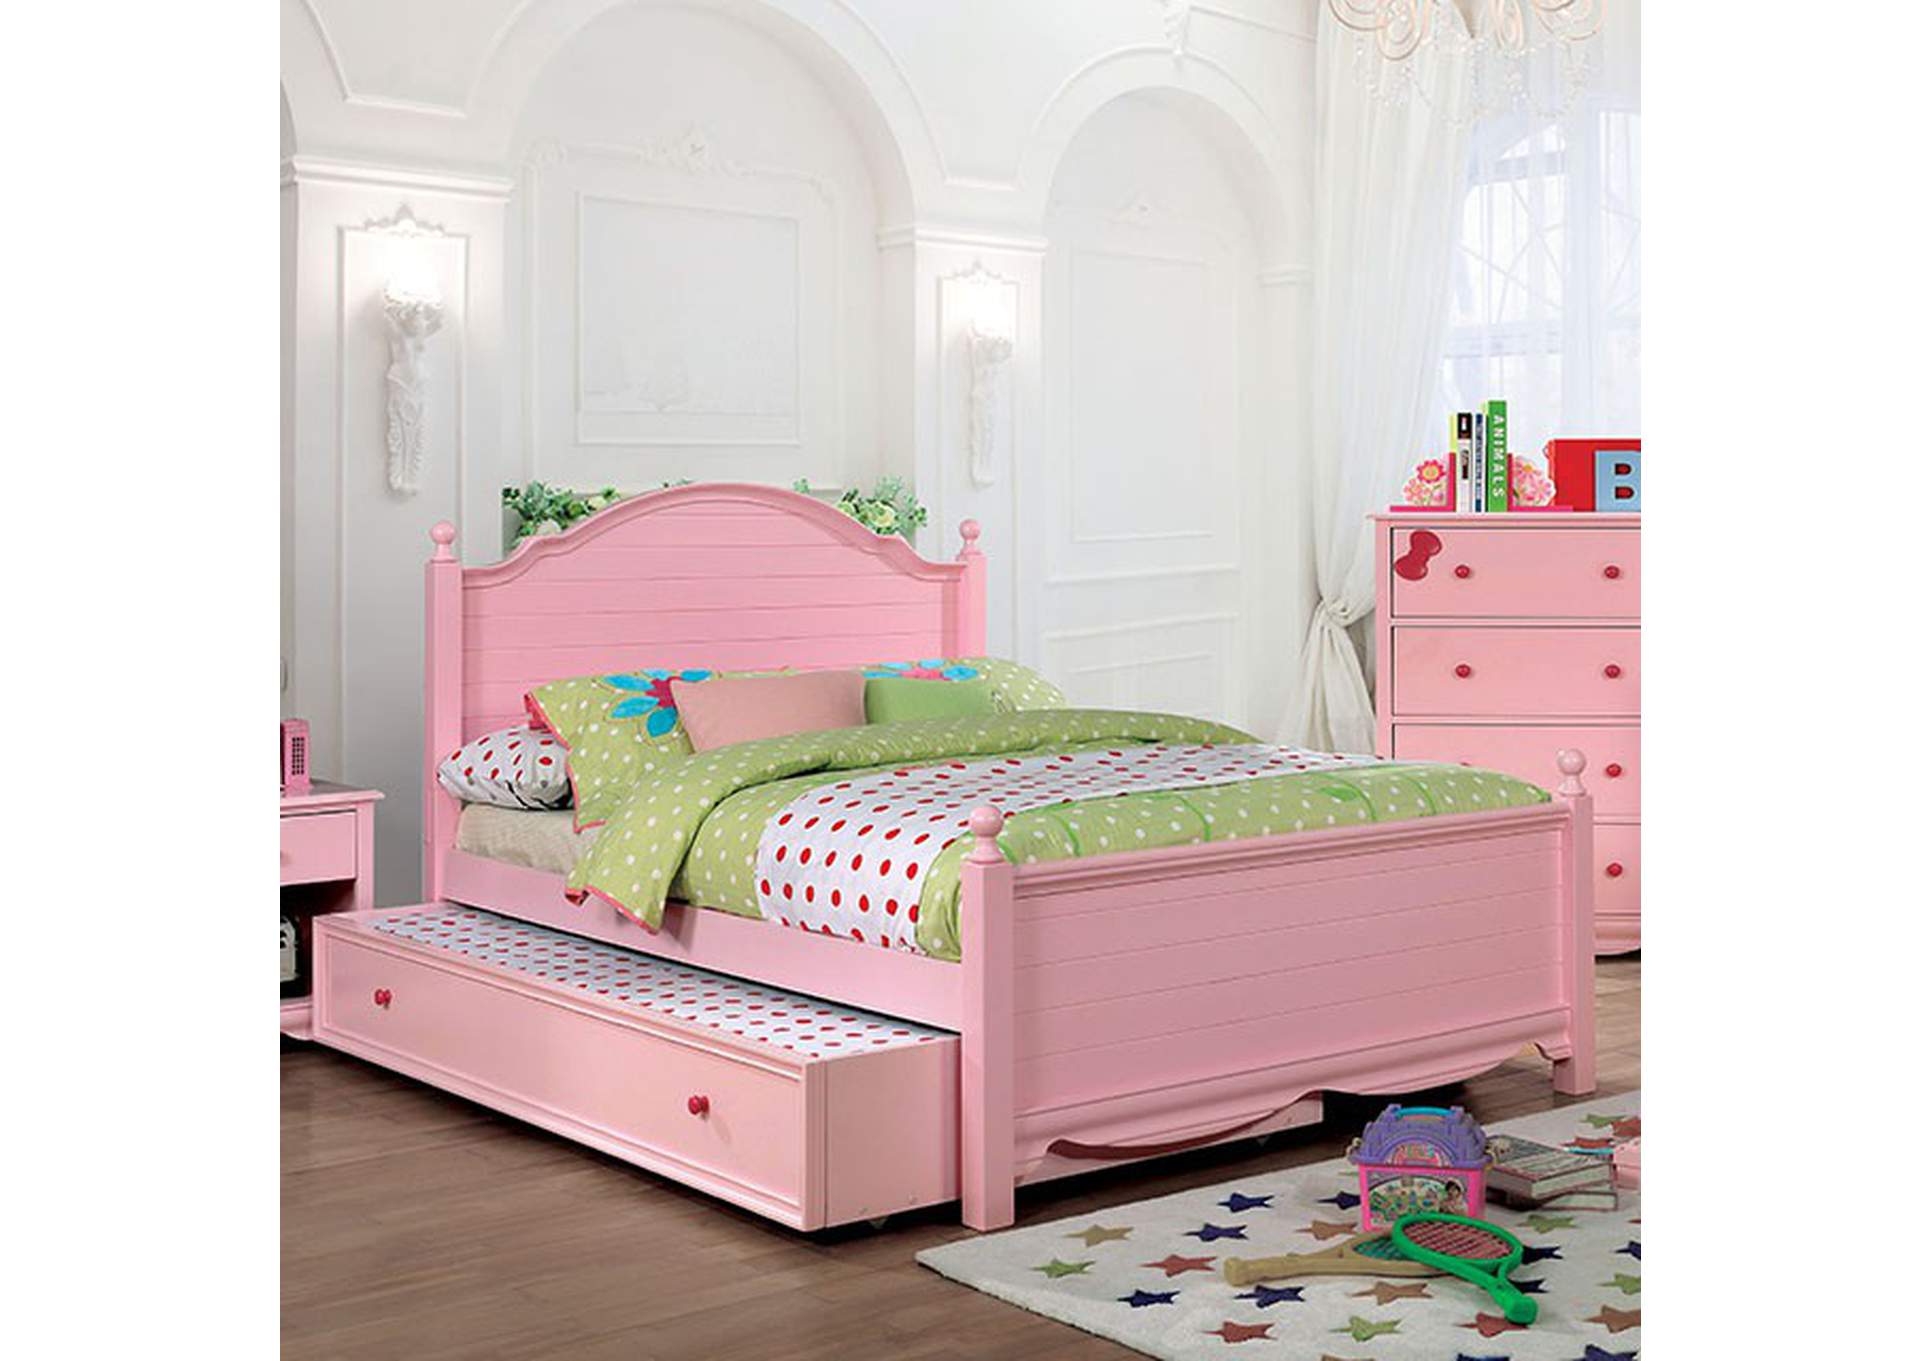 Dani Twin Bed,Furniture of America